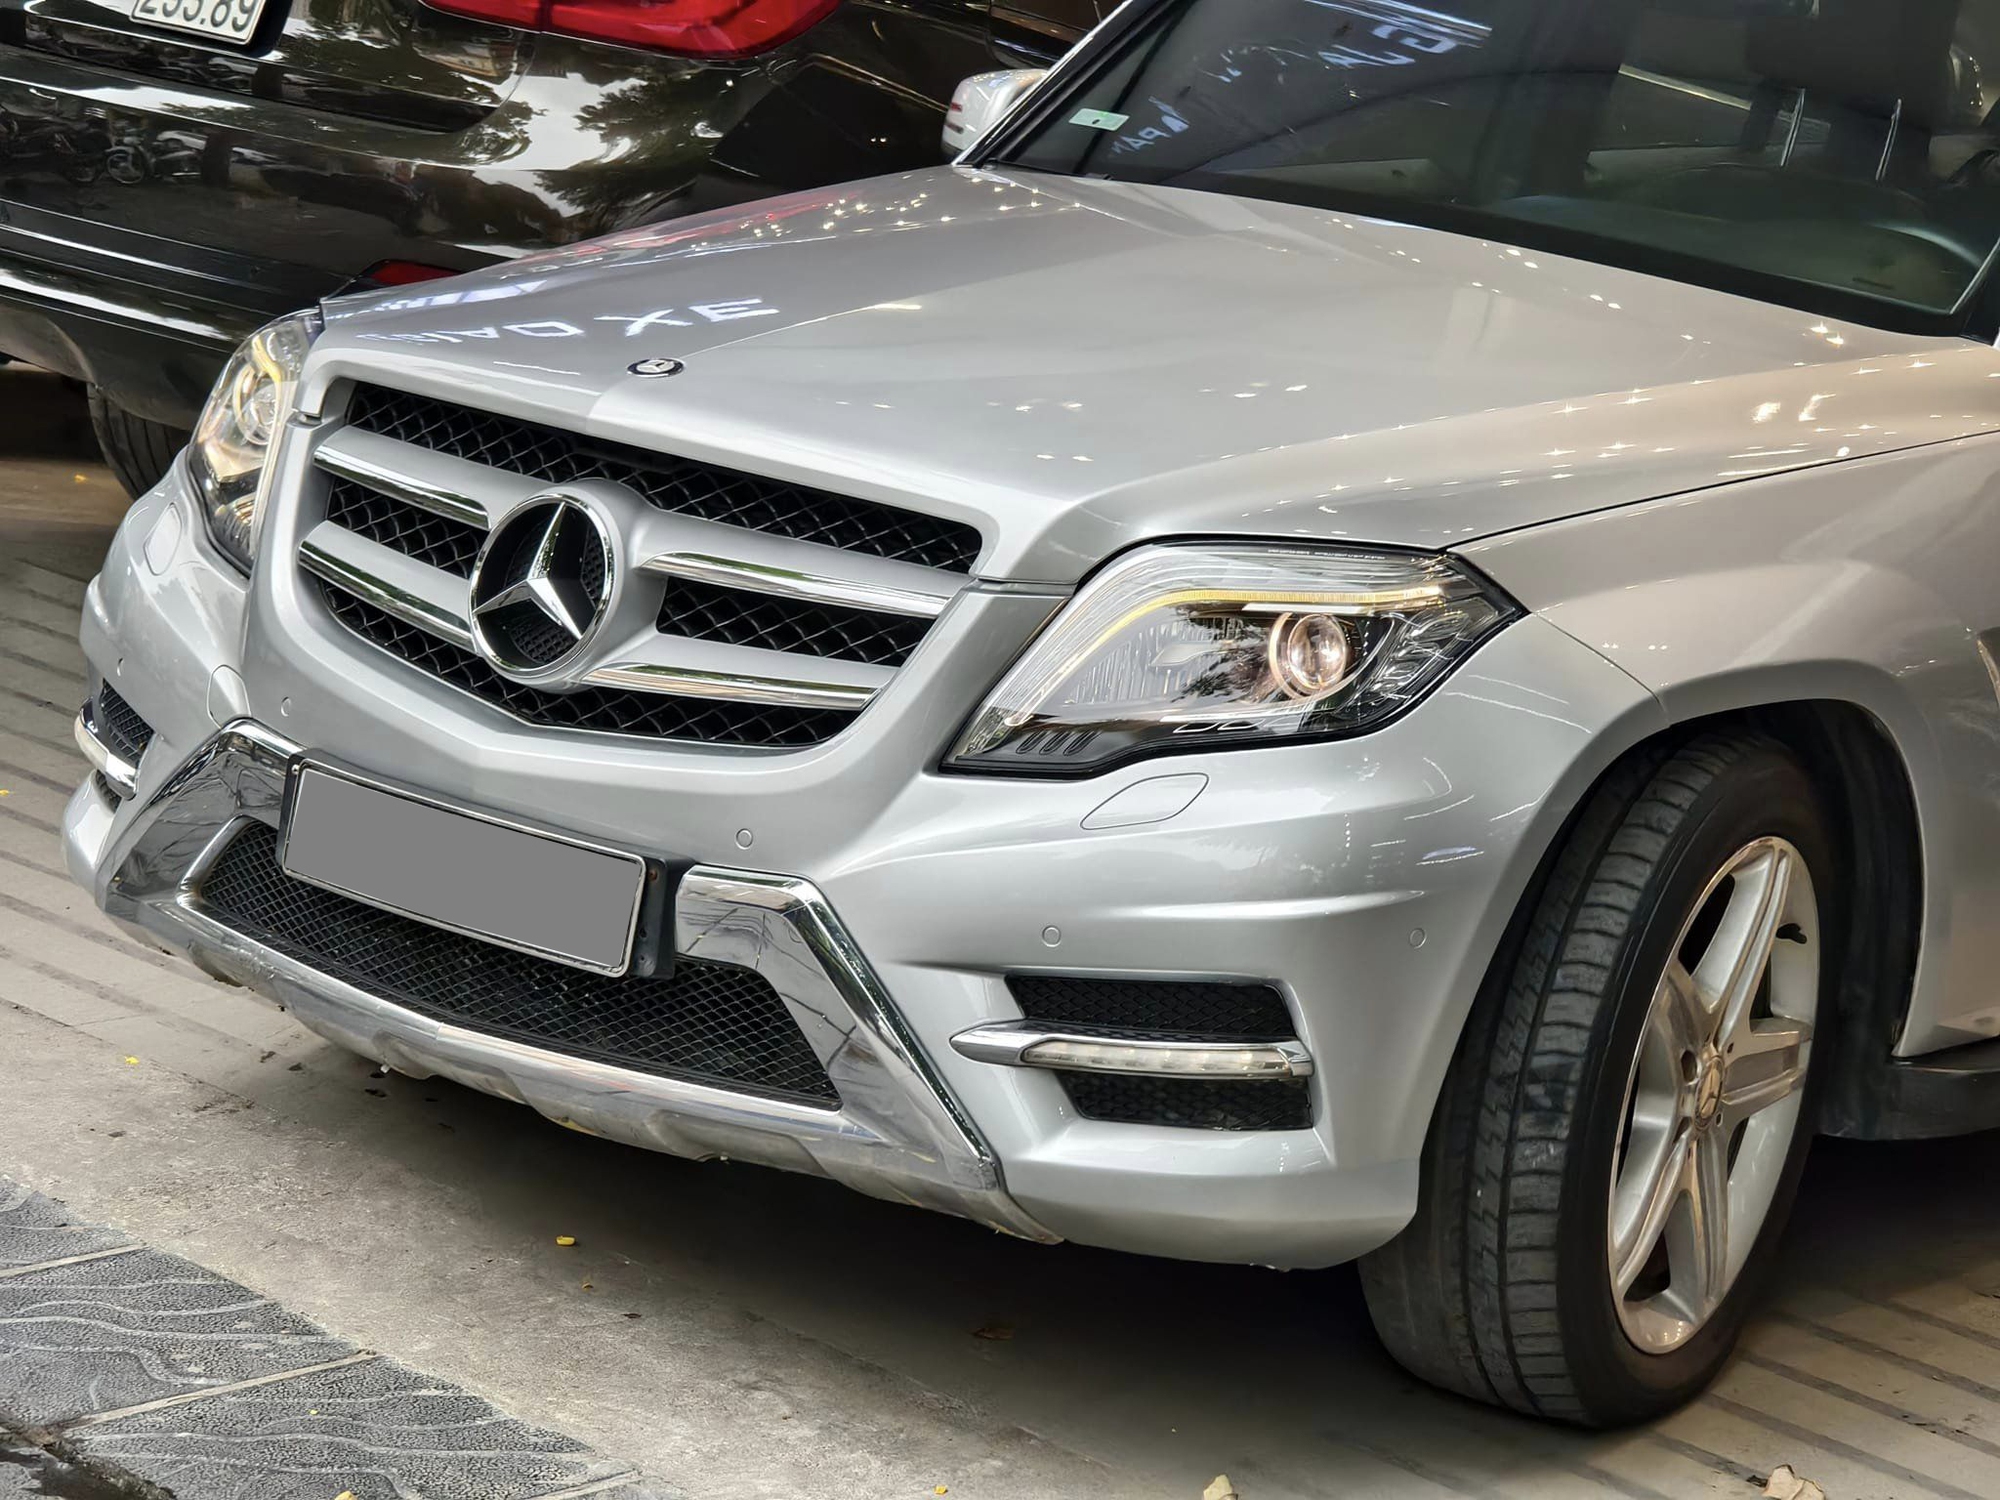 Chưa đến 600 triệu đã có Mercedes-Benz GLK mà 'cả Việt Nam chỉ có hơn 10 chiếc', nhưng đây sẽ là những điều bạn phải đánh đổi- Ảnh 5.